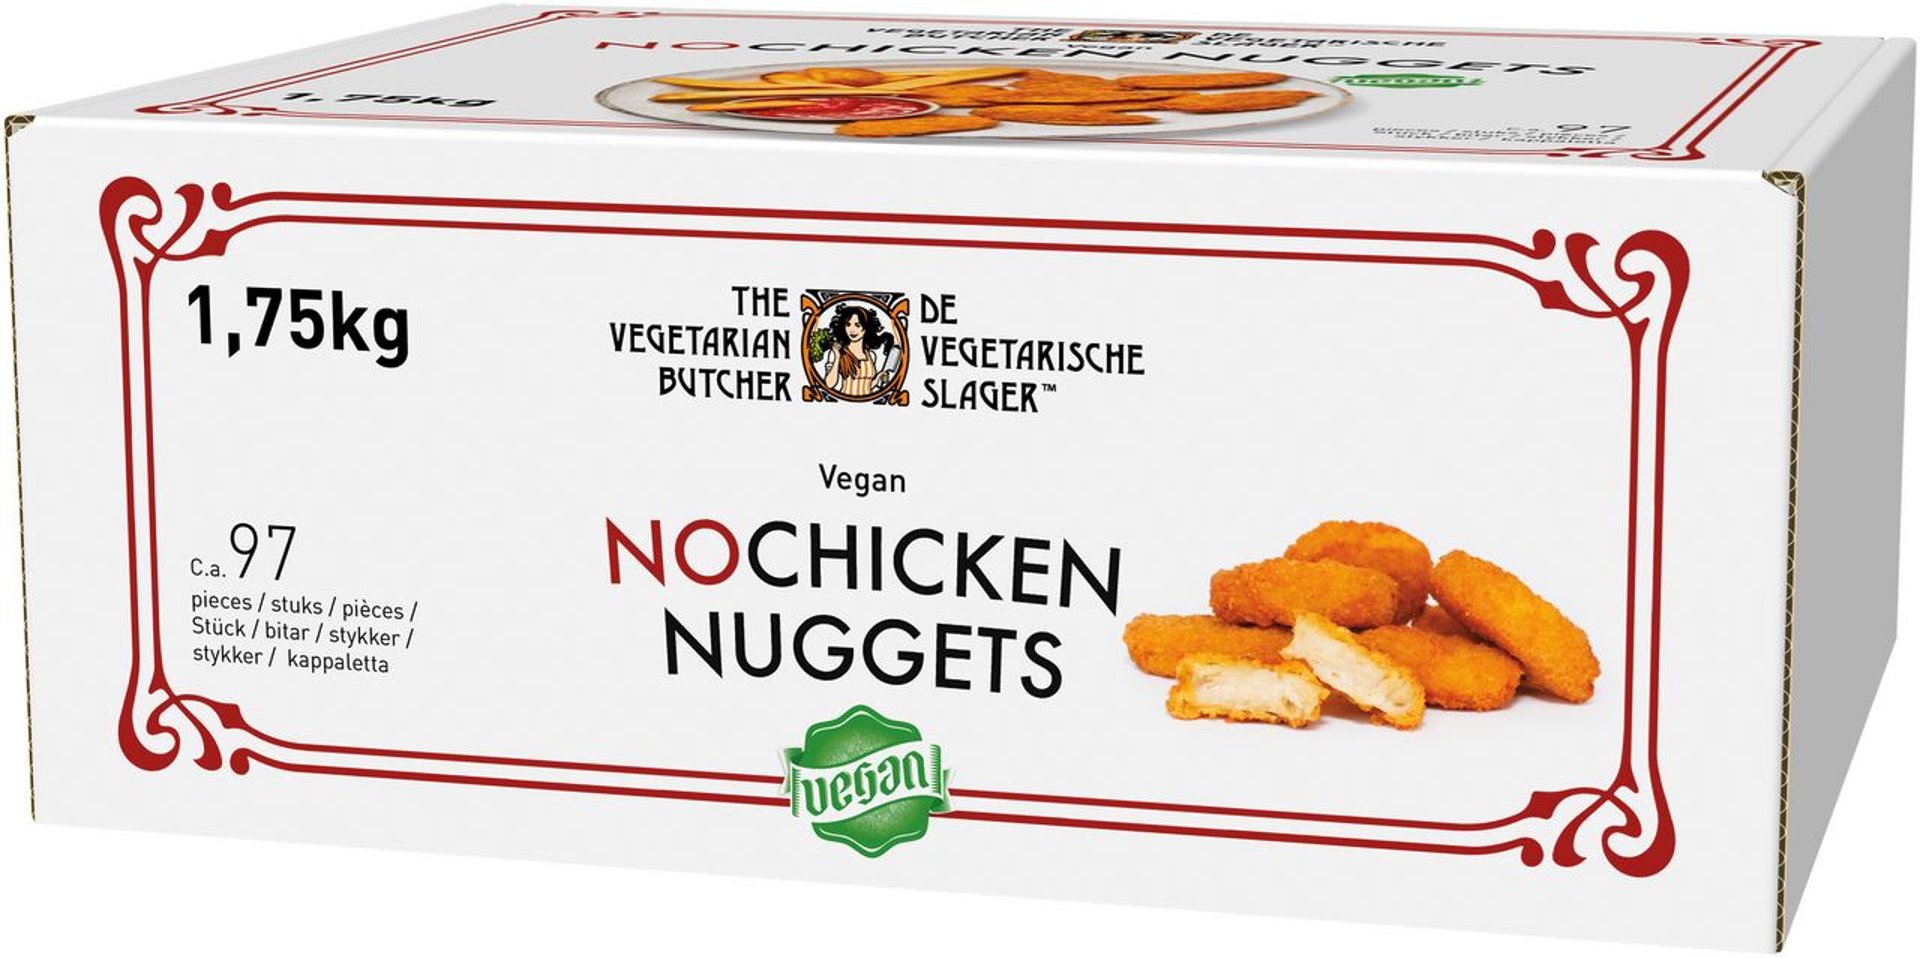 The Vegetarian Butcher - No Chicken Nuggets, vegan, auf Soja-Basis tiefgefroren ca. 87 Stück - 1,75 kg Schachtel